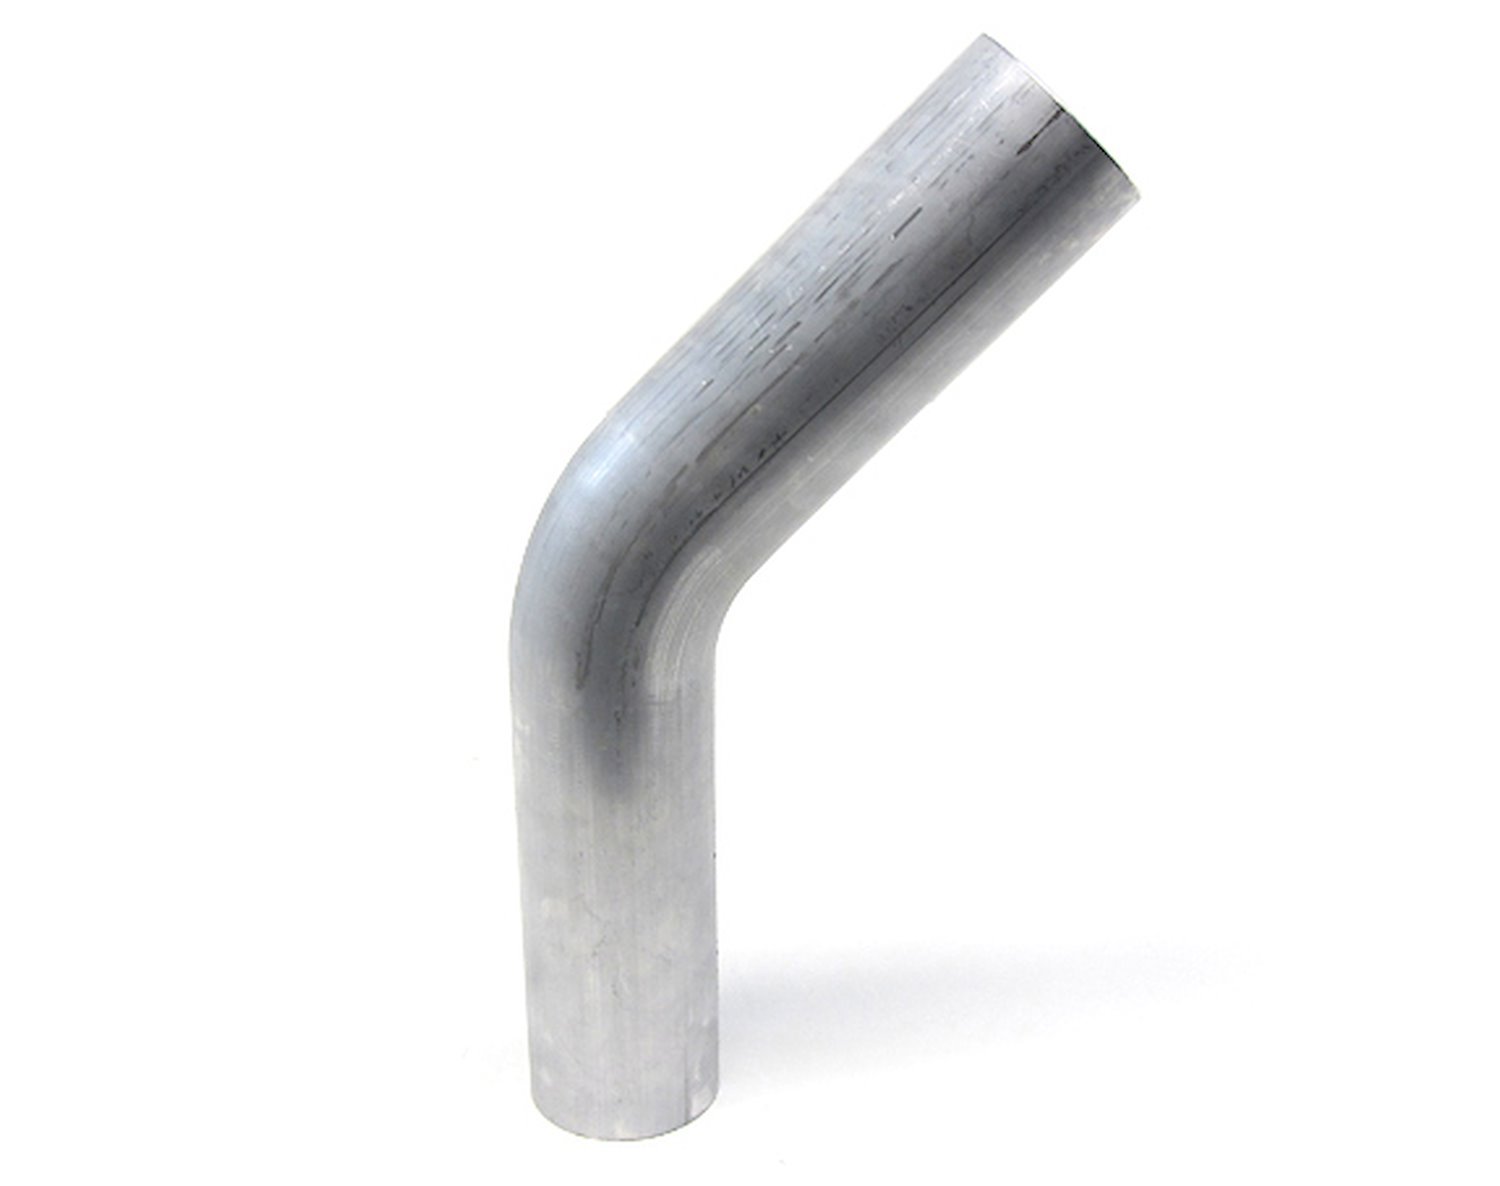 AT45-300-CLR-475 Aluminum Elbow Tube, 6061 Aluminum, 45-Degree Bend Elbow Tubing, 3 in. OD, Large Radius, 4-3/4 in. CLR